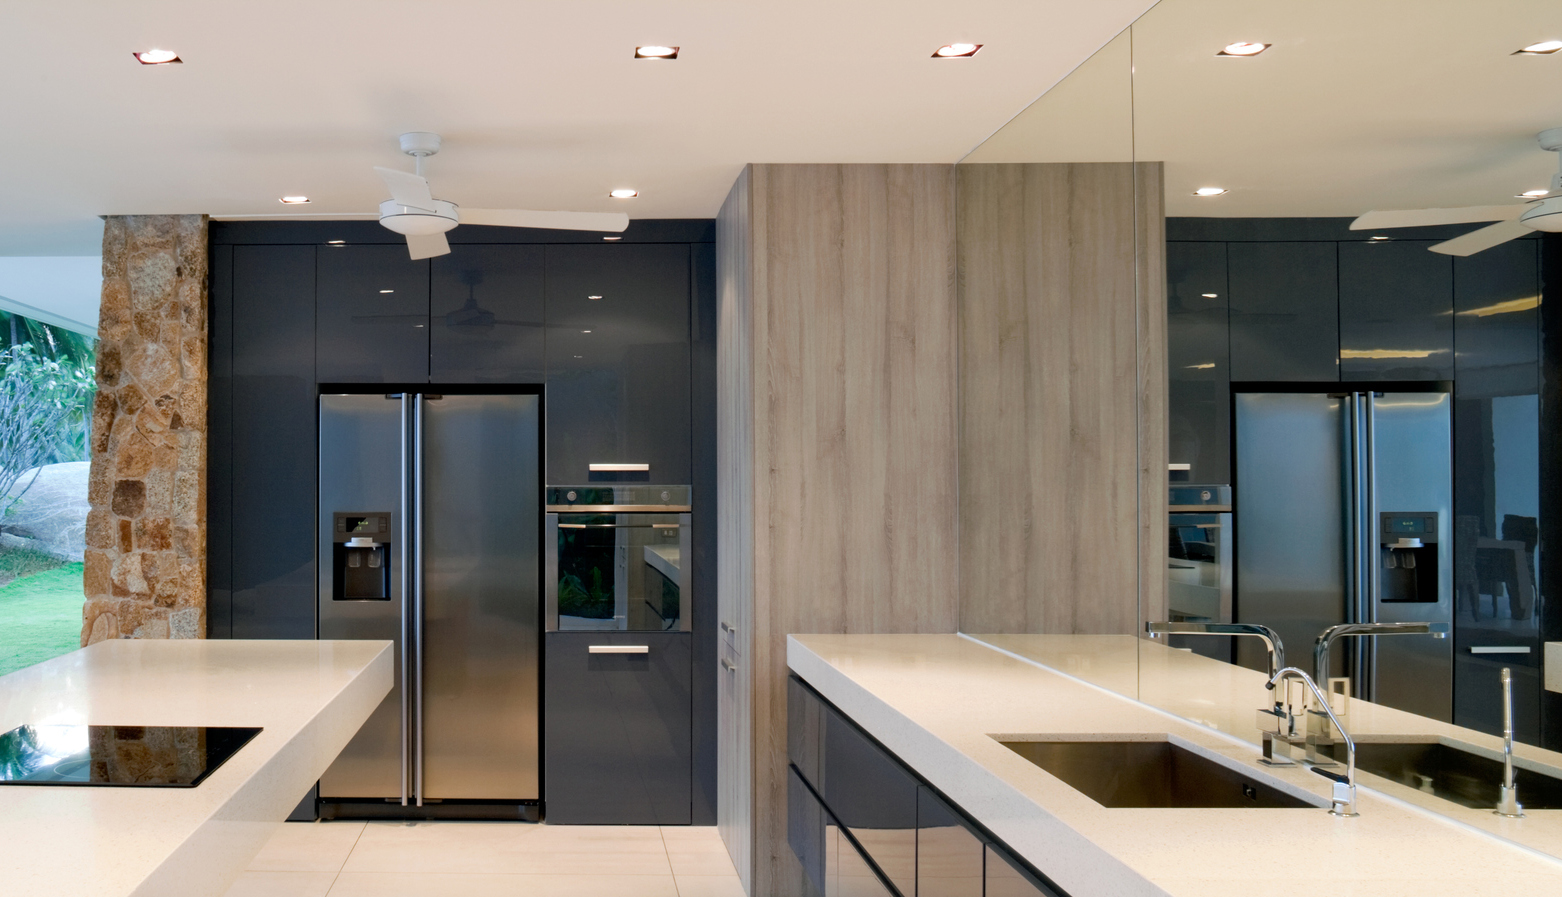 LED lighting in sleek modern kitchen